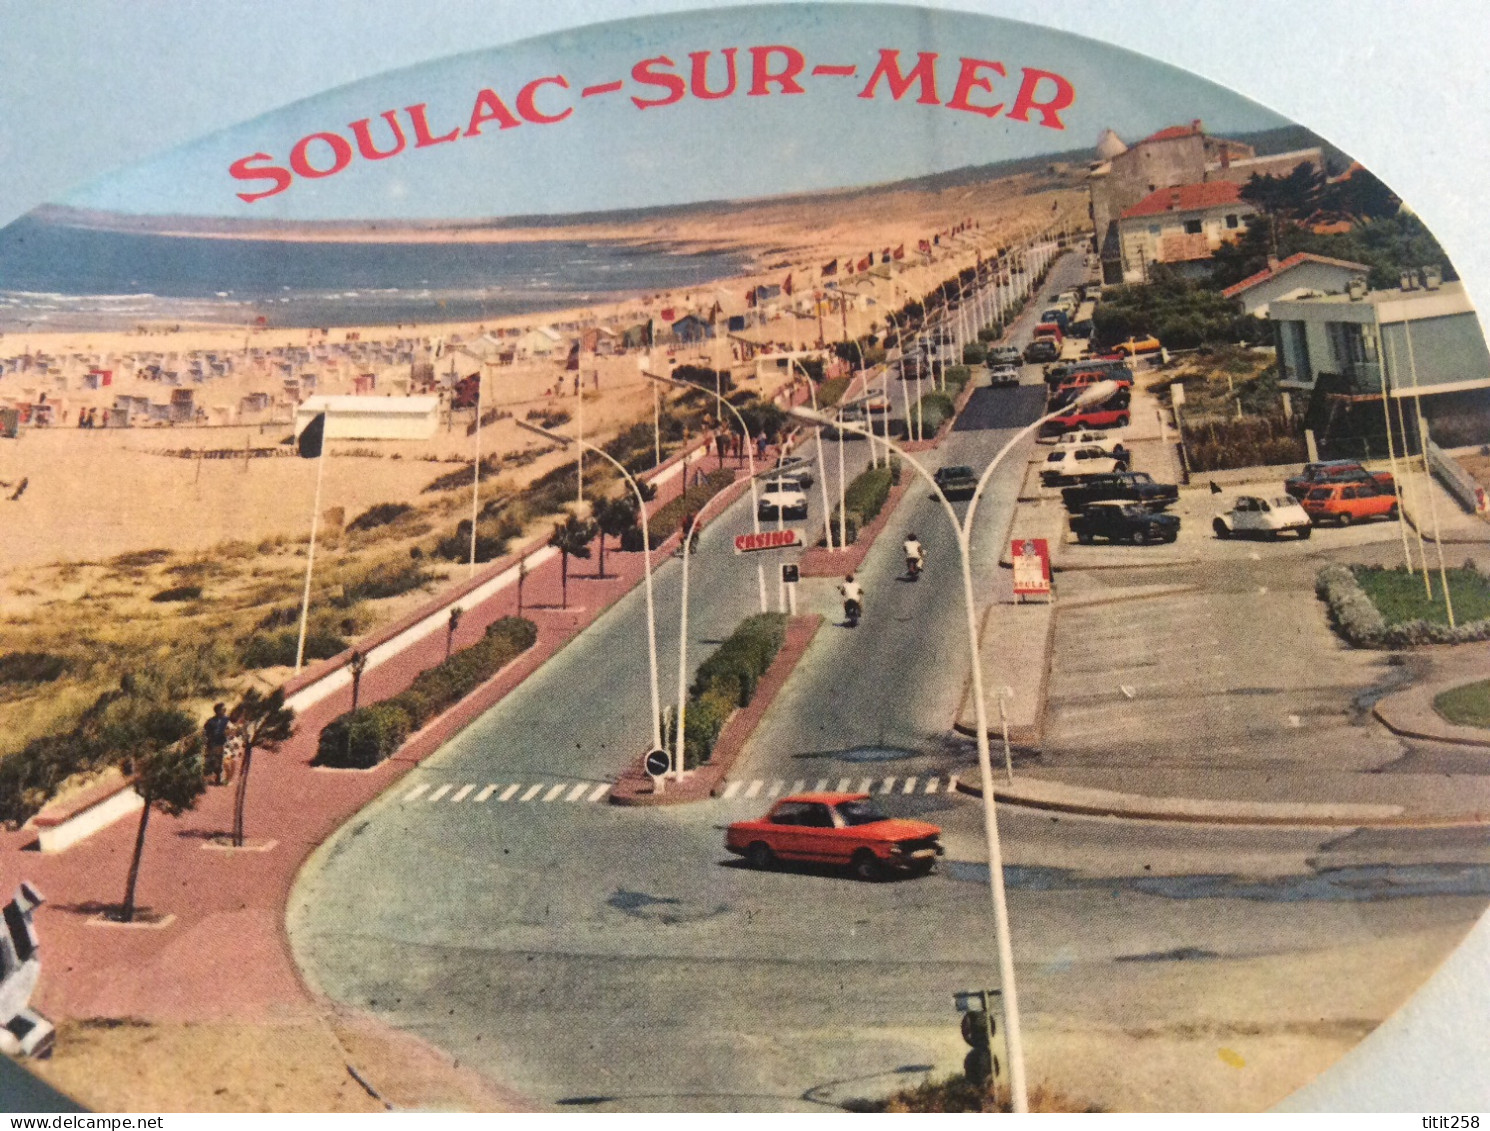 Pas Courant / Joli Et Ancien Autocollant Front De Mer Plage Automobiles / SOULAC SUR MER 33 GIRONDE 1979 - Stickers